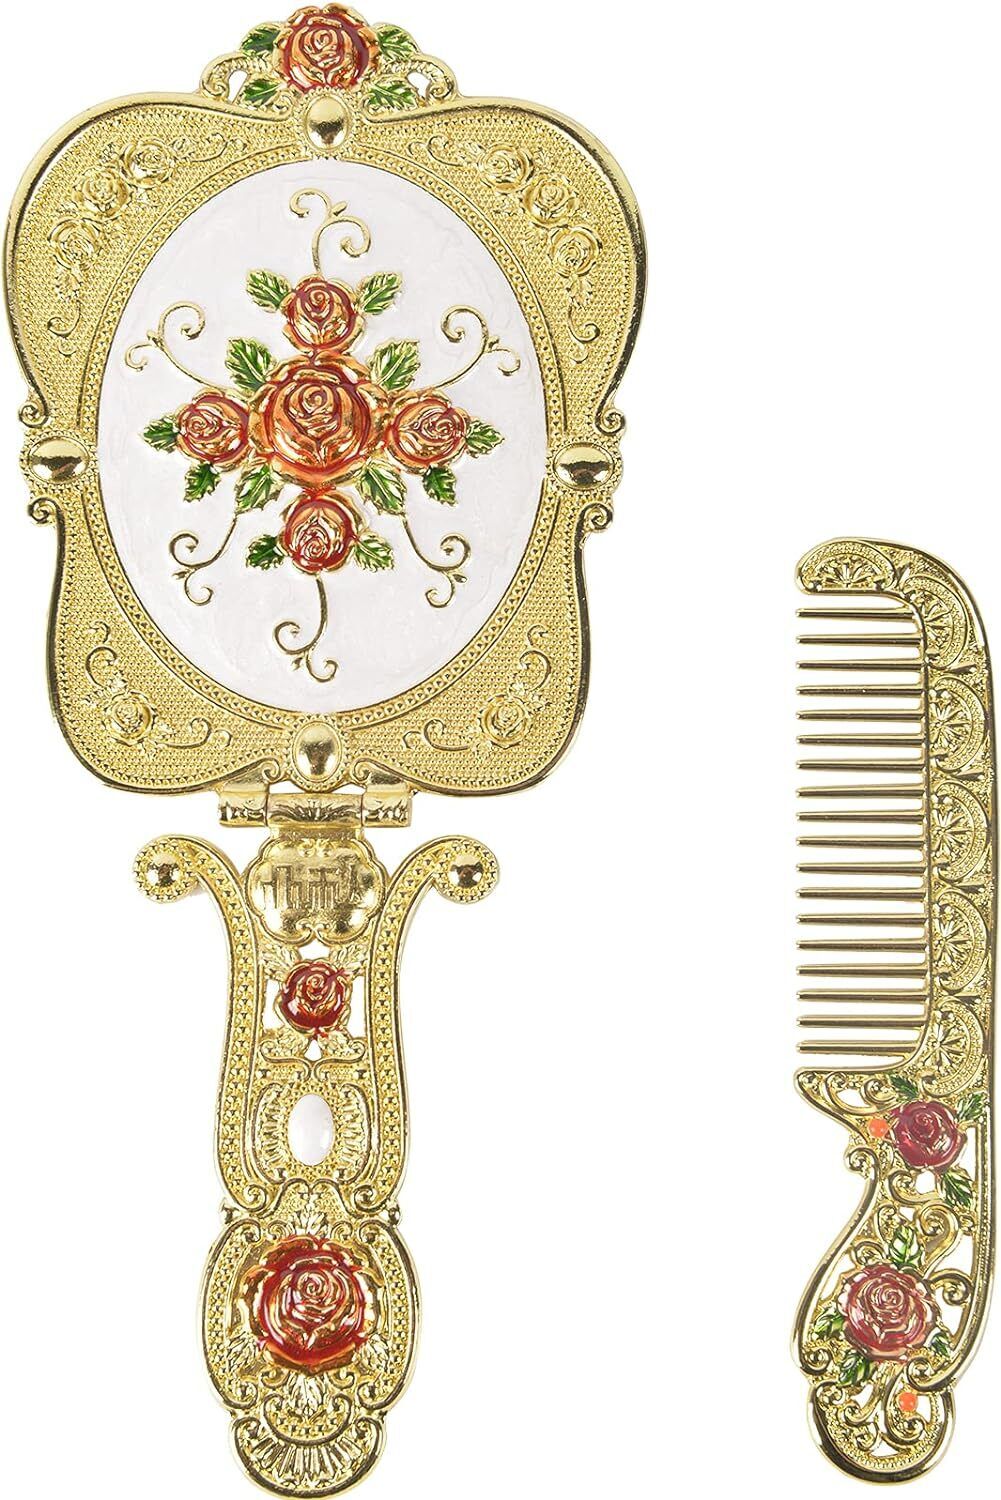 Antique Mirror Comb Set Vintage Metal Handheld Makeup CombRussianStyleEmbossed